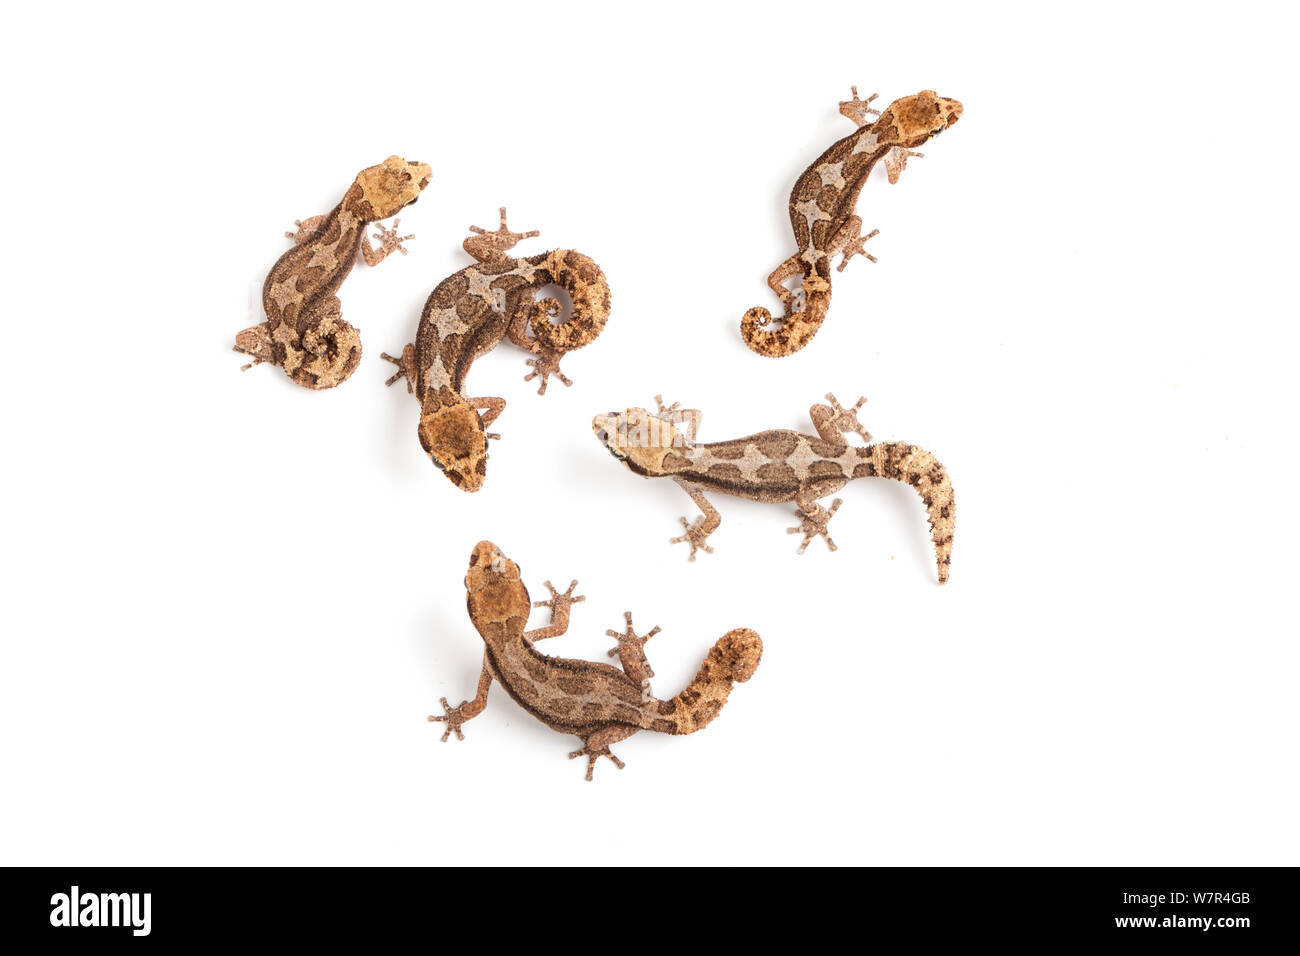 Grandidier der Geckos (Paroedura androyensis) gegen den weißen Hintergrund. Madagaskar. Stockfoto